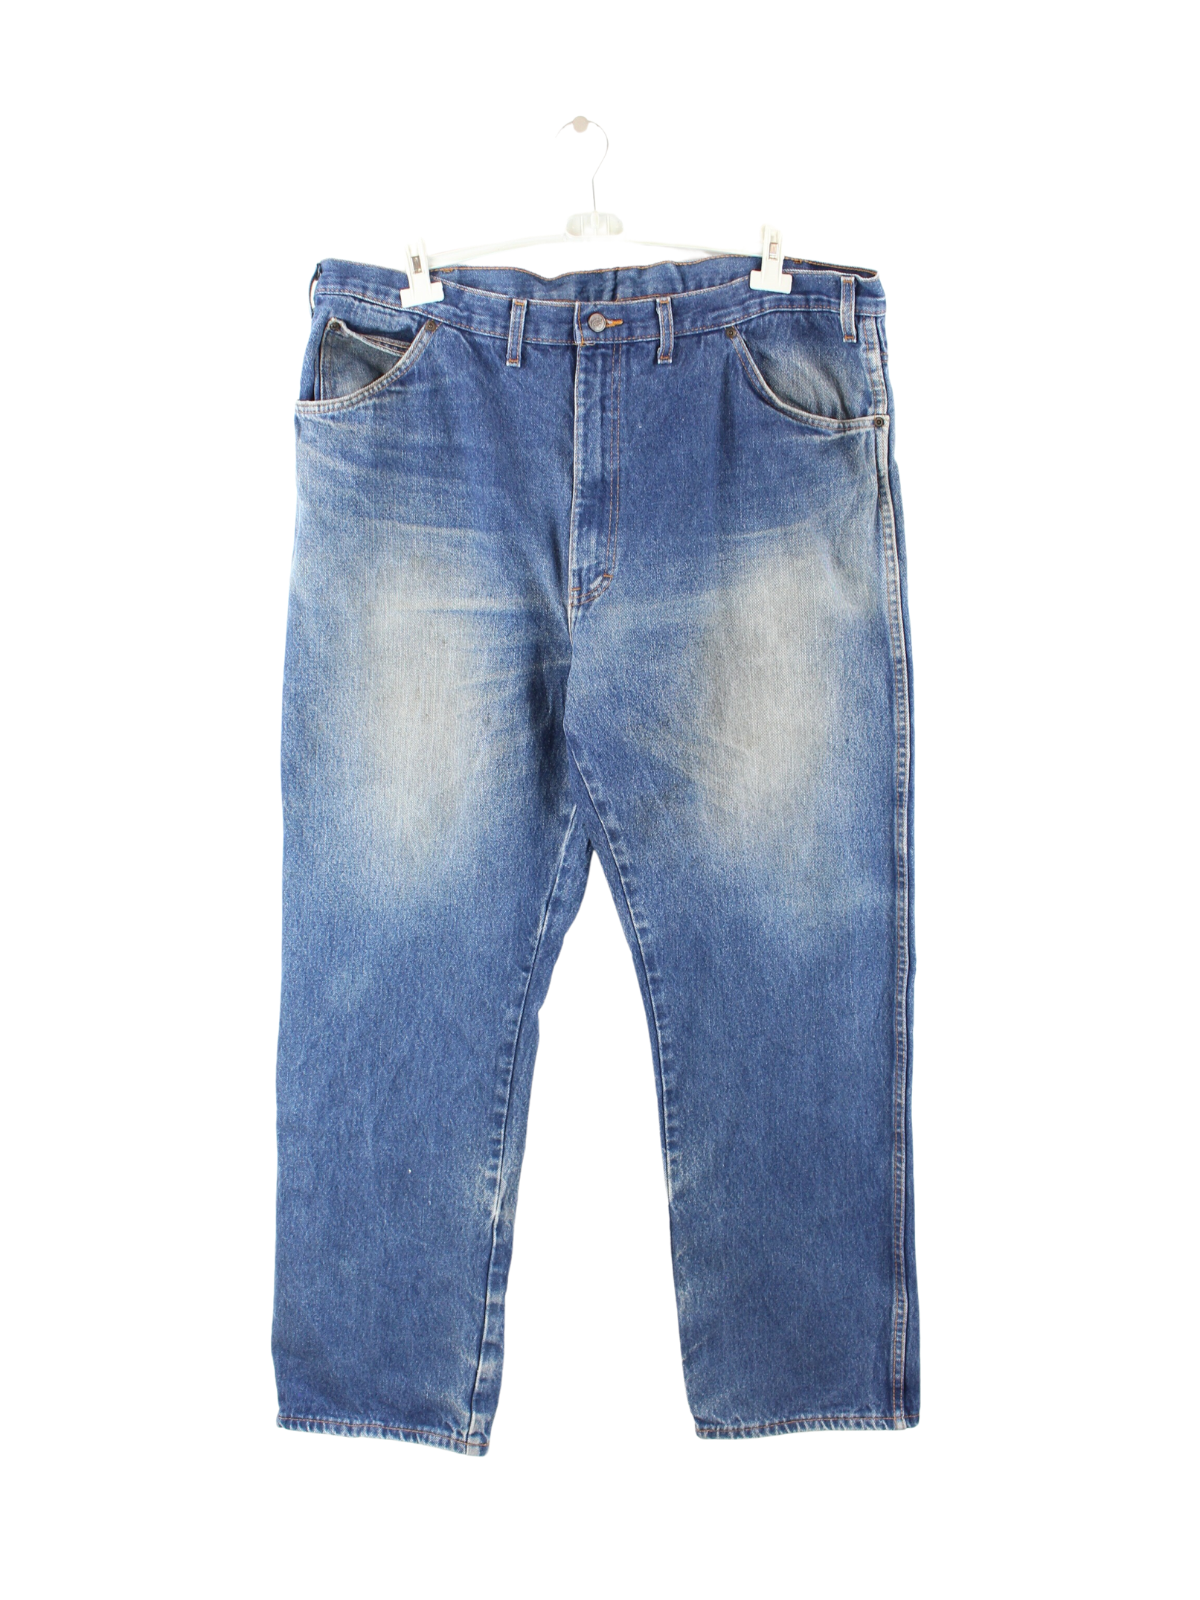 Dickies Jeans Blue W44 L32